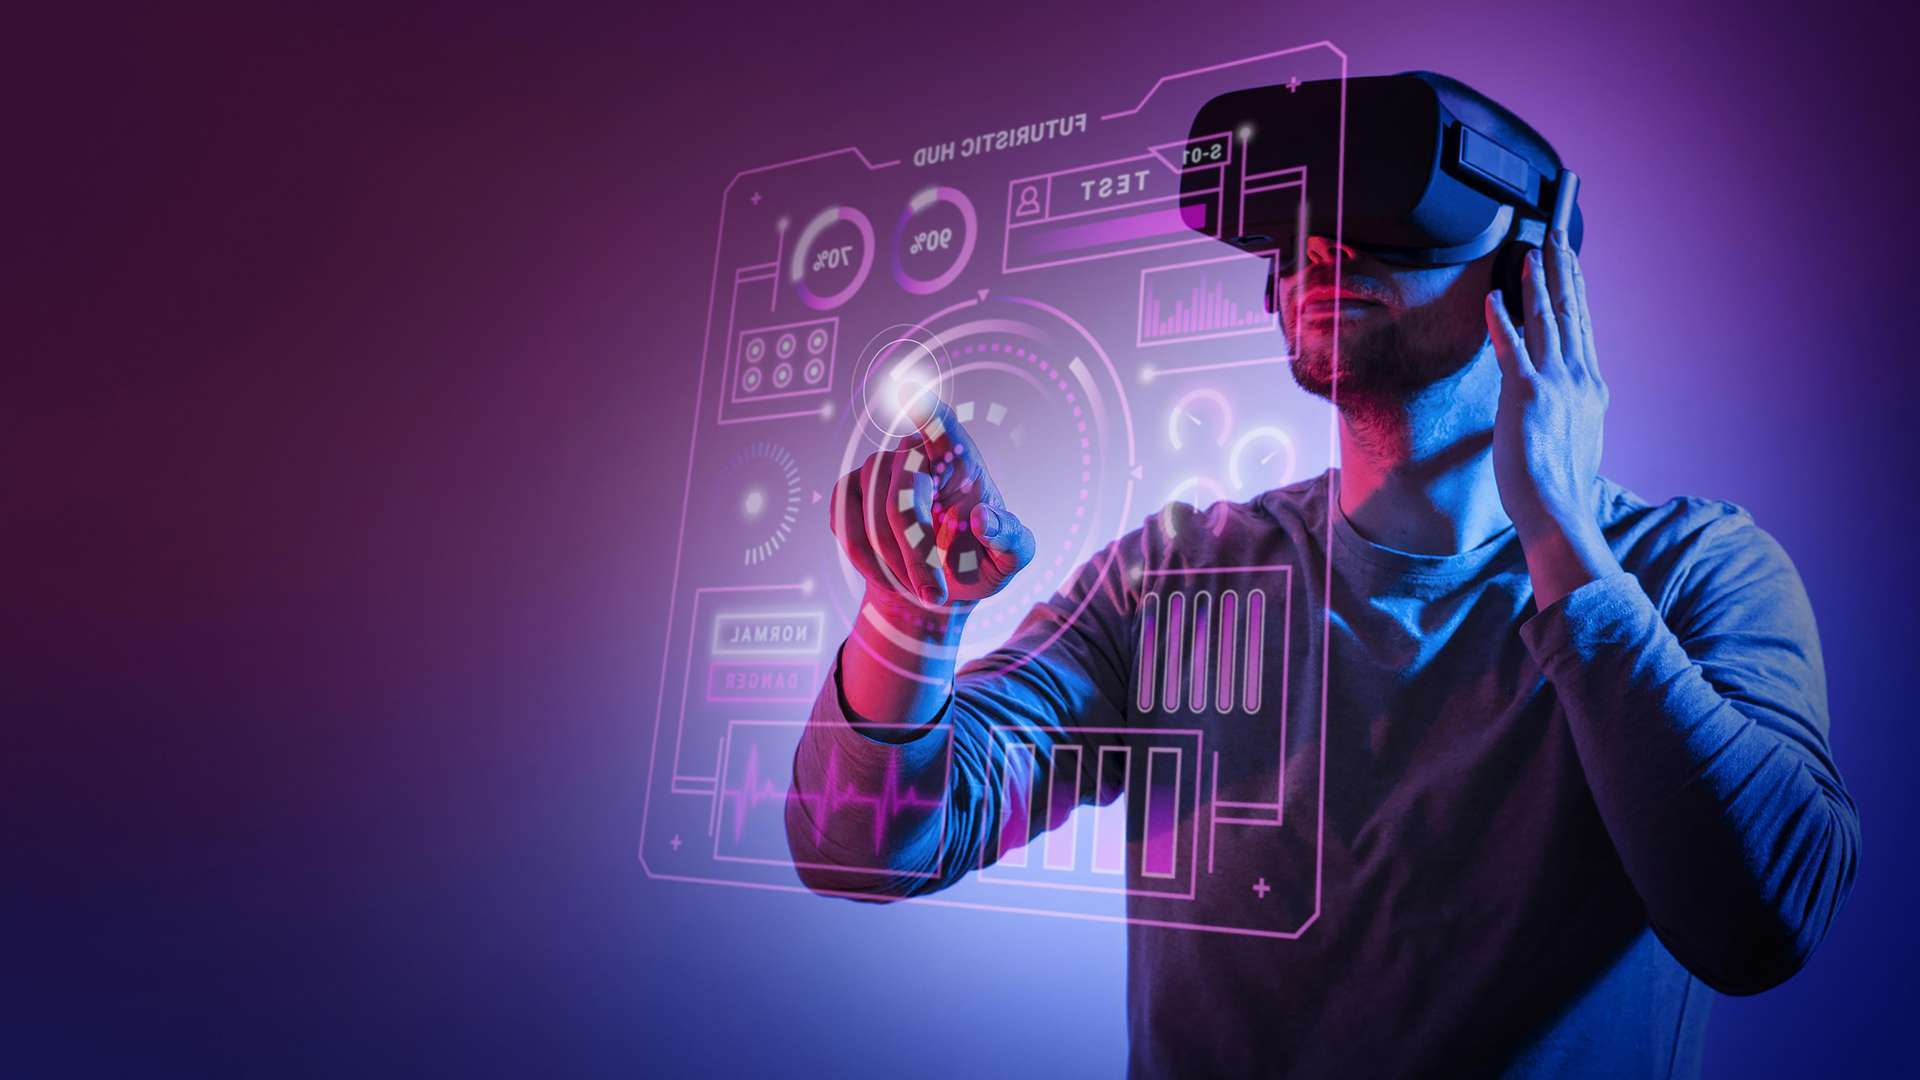 图片展示一位男士戴着虚拟现实头盔，正在用手势操作前方的虚拟界面，背景为紫色调。